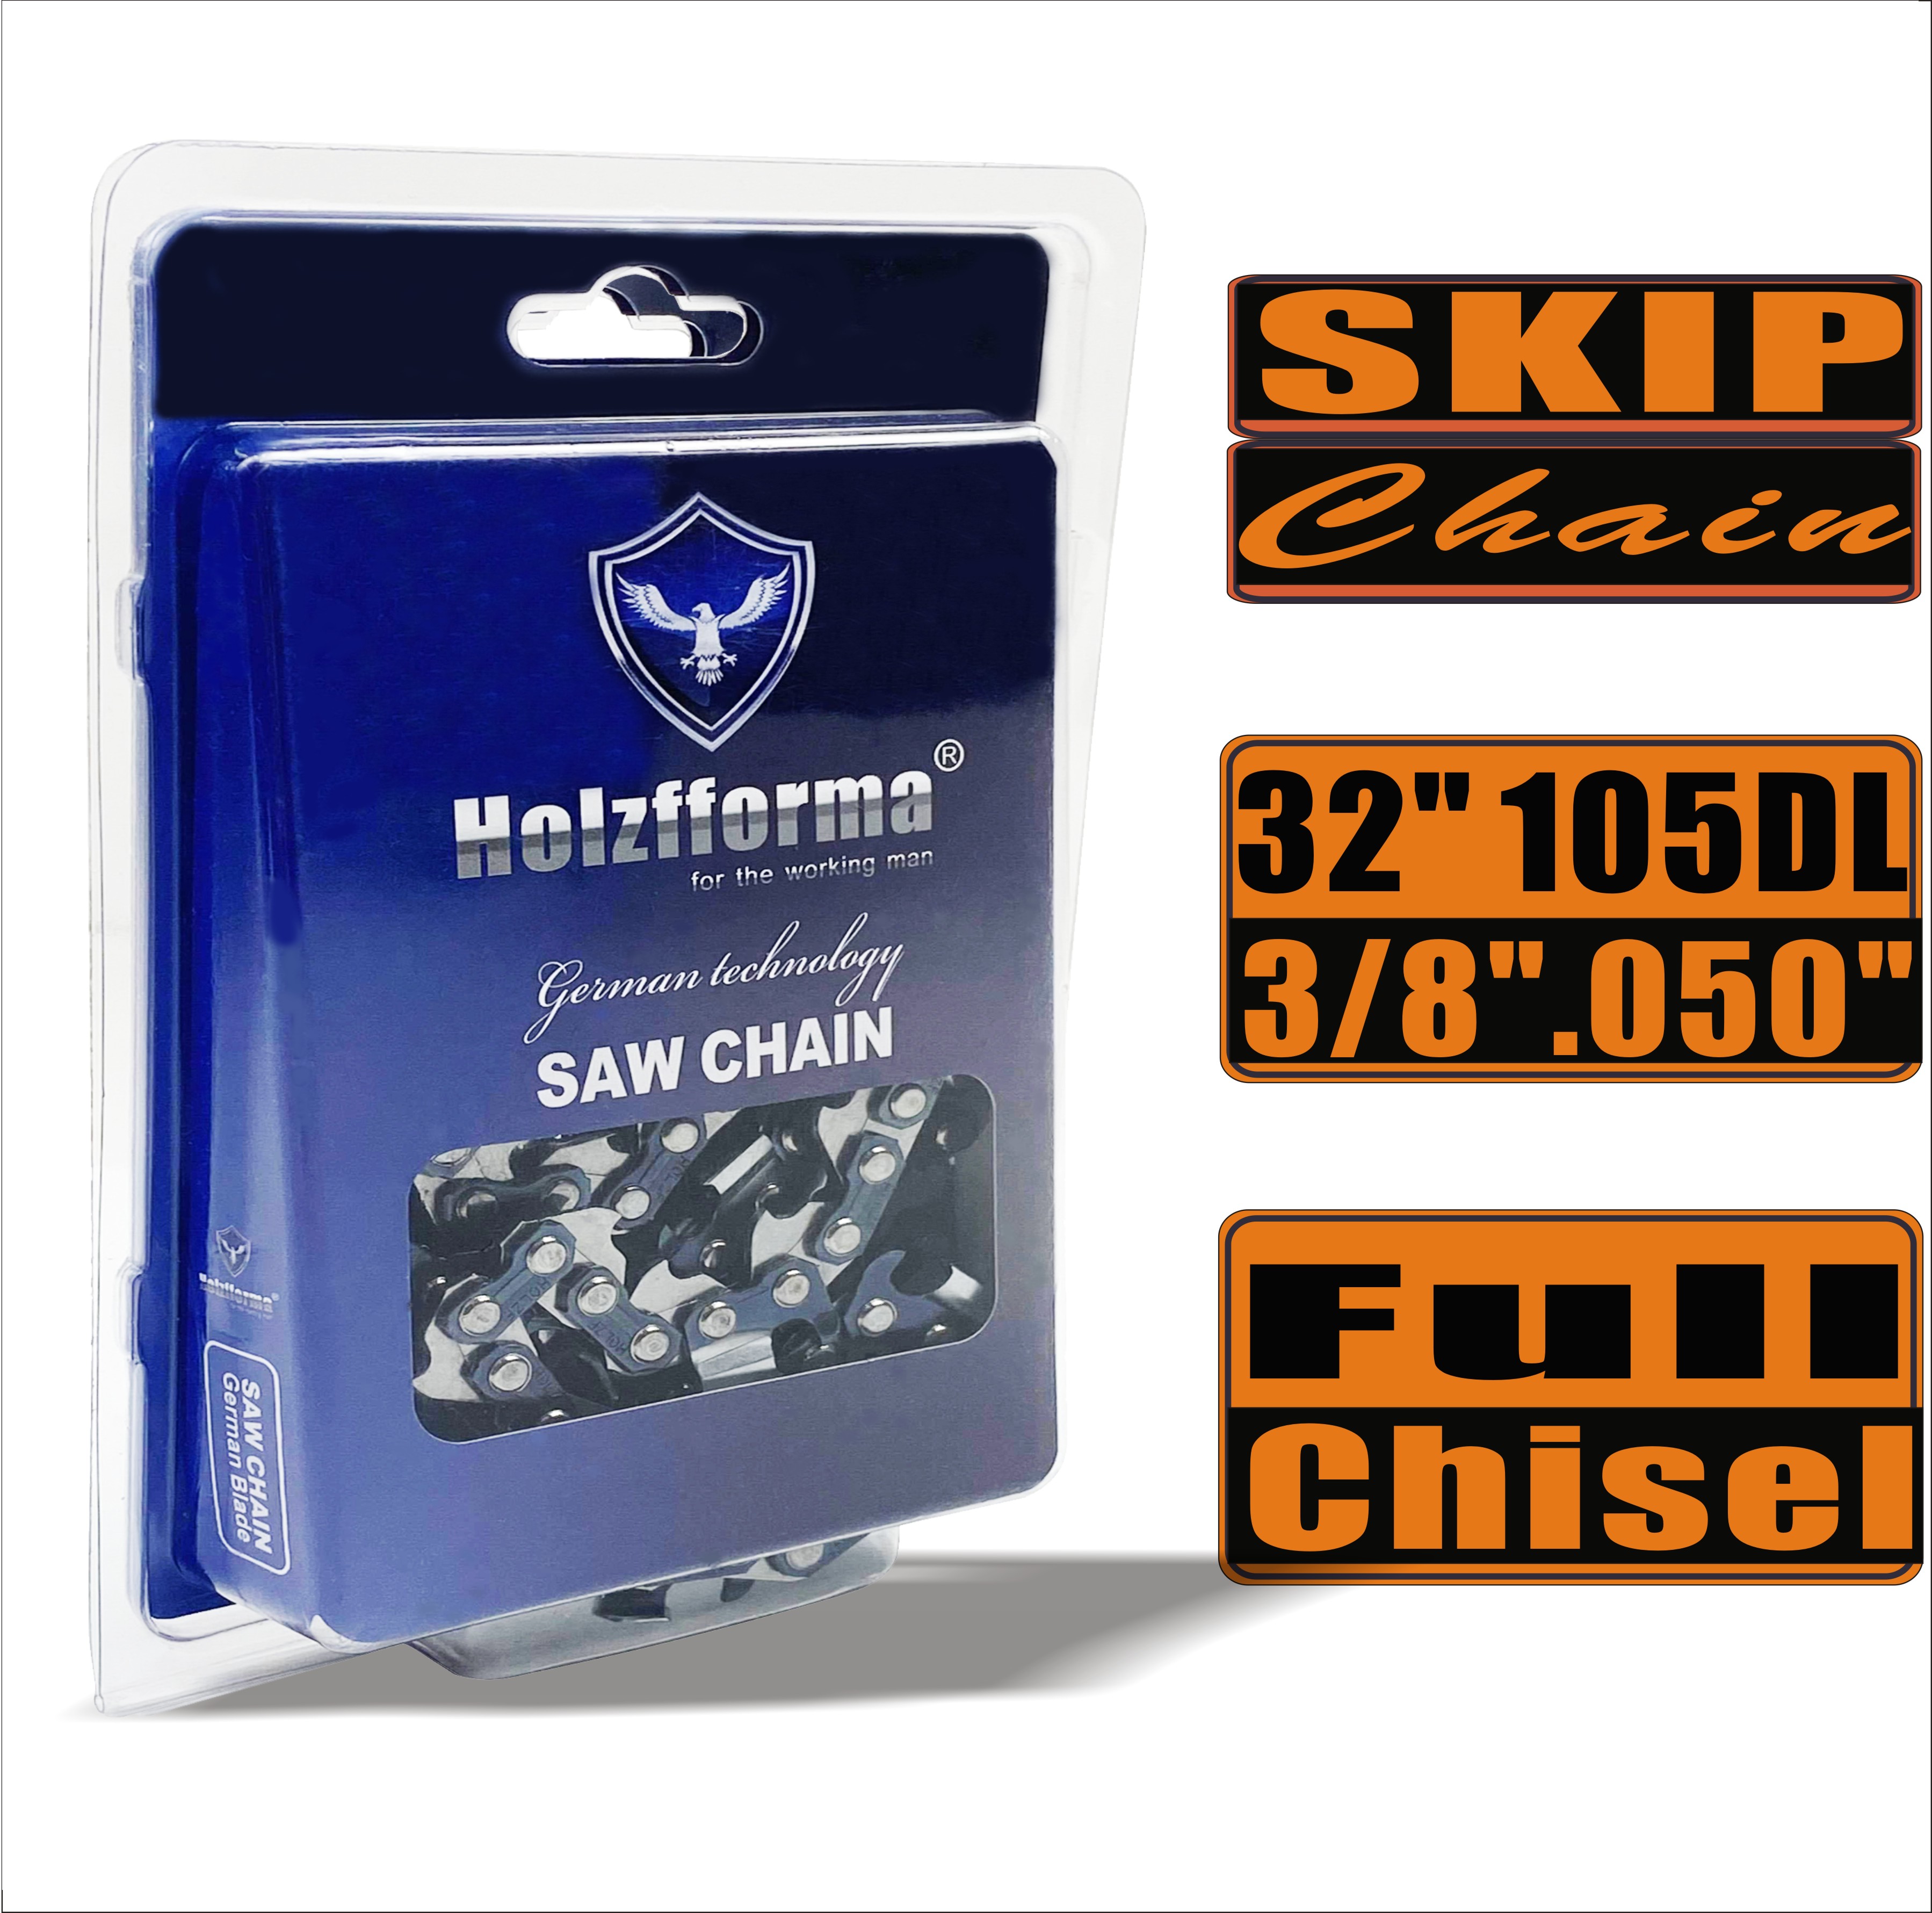 Holzfforma® Skip Chain Full Chisel 3/8'' .050'' 32inch 105DL цепи для Бензопилы Высококачественные немецкие лезвия и звенья